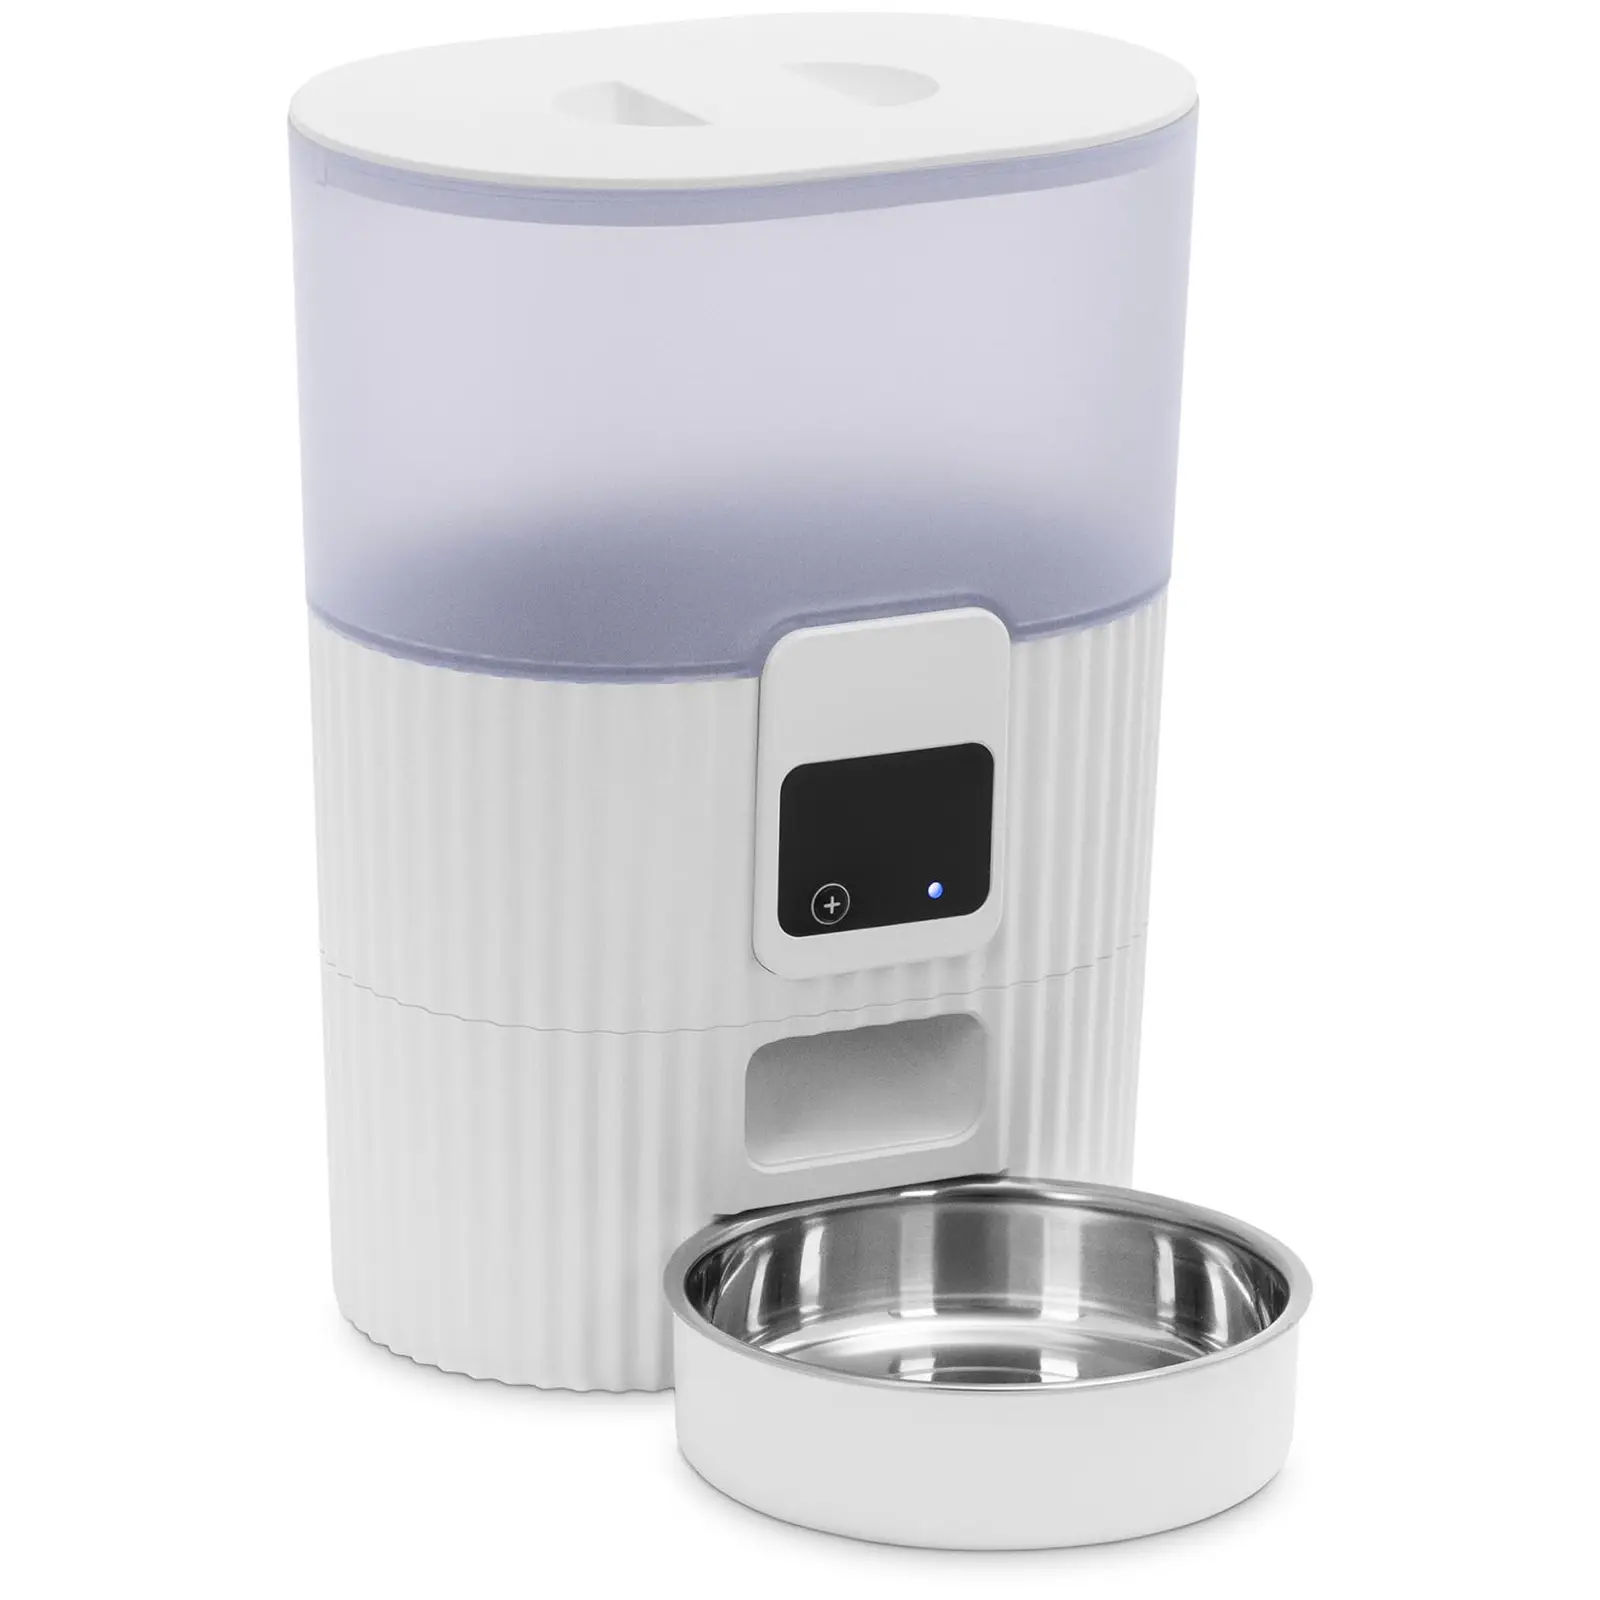 Smart automatisk matare - för katter och hundar - LED-display + app - 3,5 L